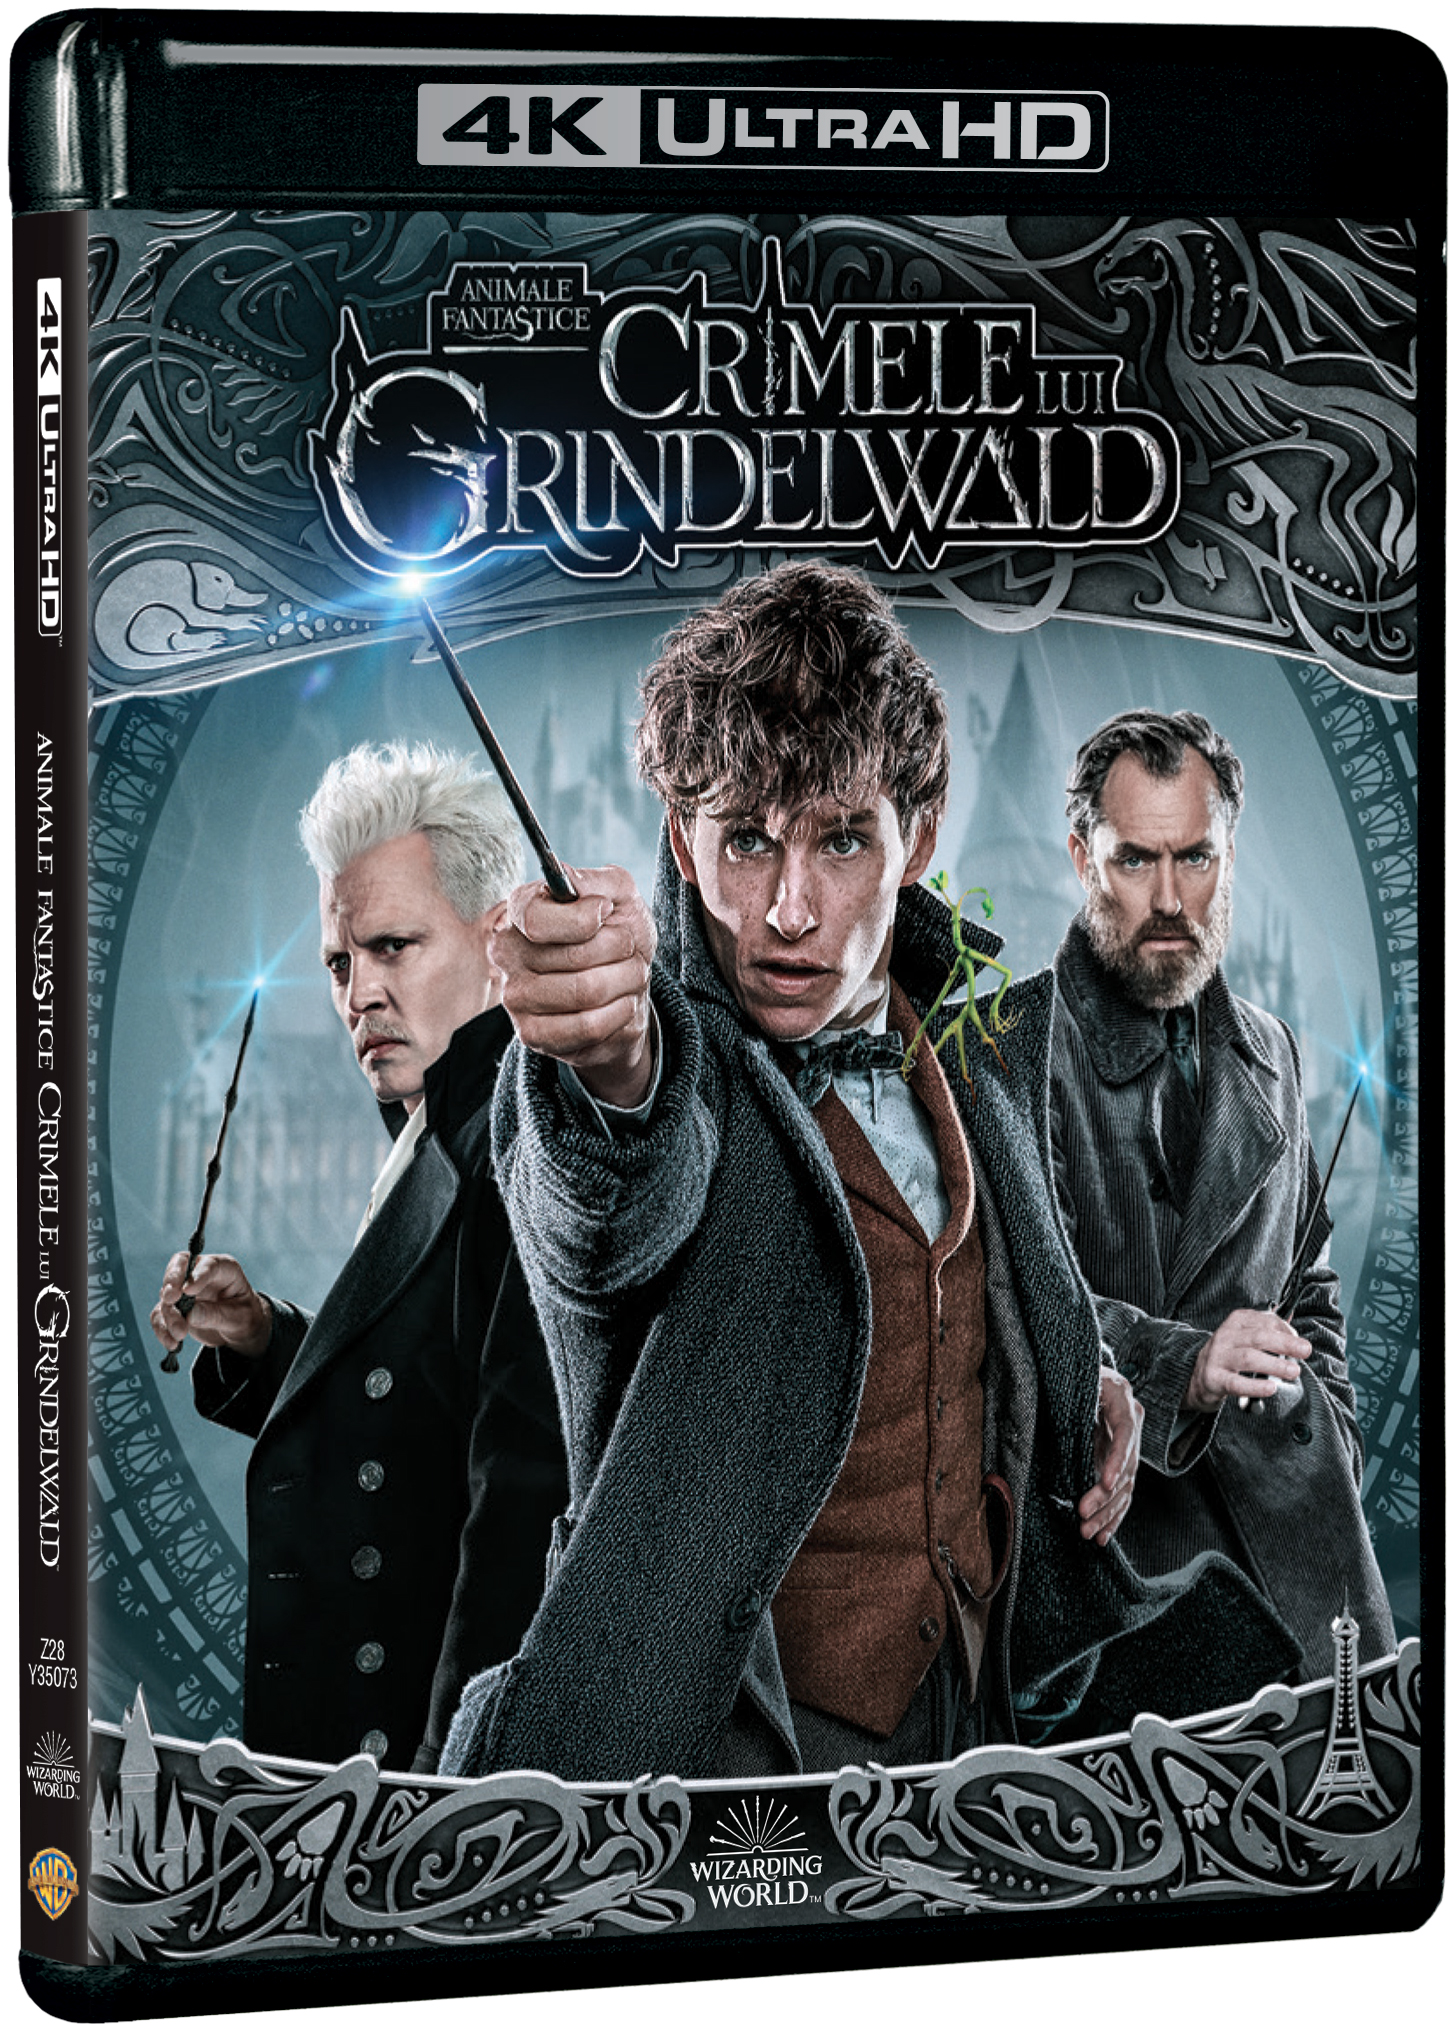 Animale Fantastice: Crimele lui Grindelwald / Fantastic Beasts: The Crimes of Grindelwald - 4K 